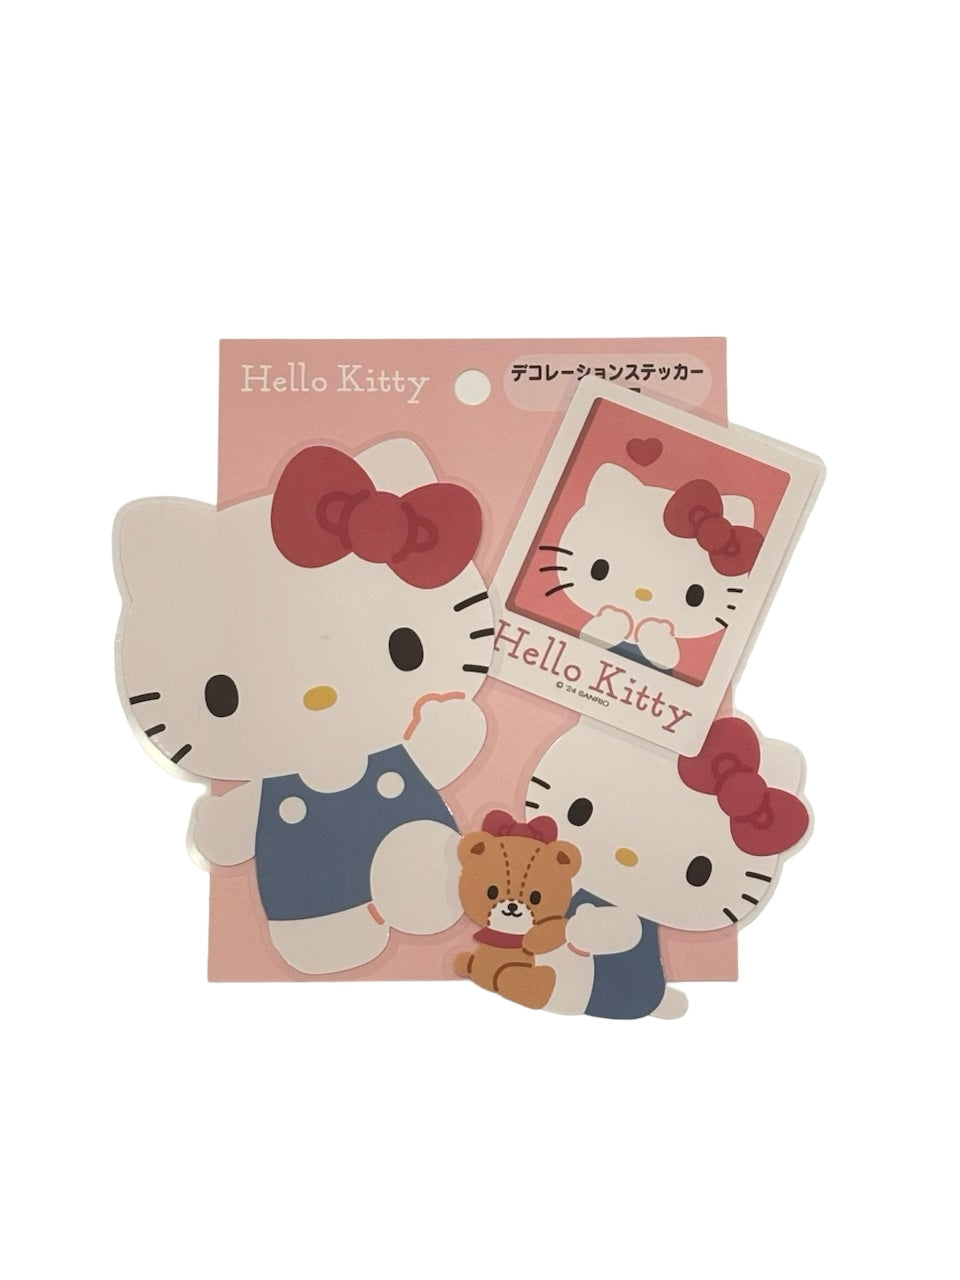 Hello Kitty "School" Stickers